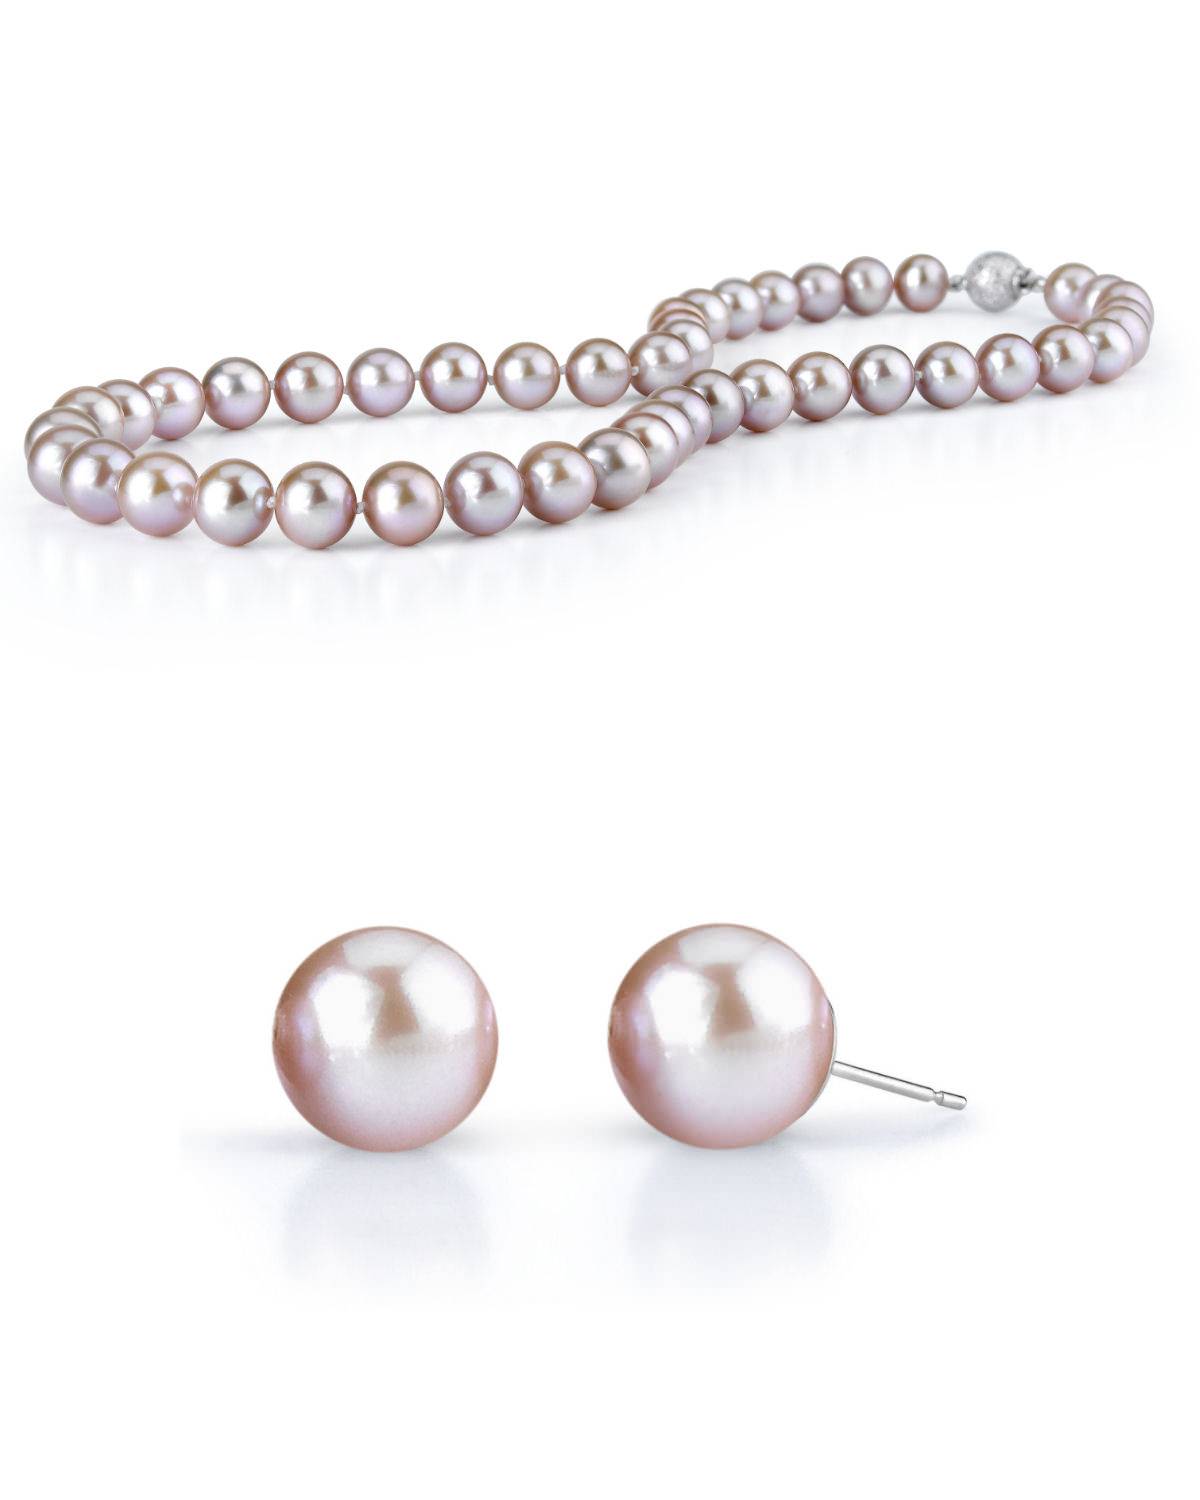 Ожерелье из розового пресноводного жемчуга диаметром 7-8 мм и подходящие серьги-гвоздики с розовым жемчугом от The Pearl Source.